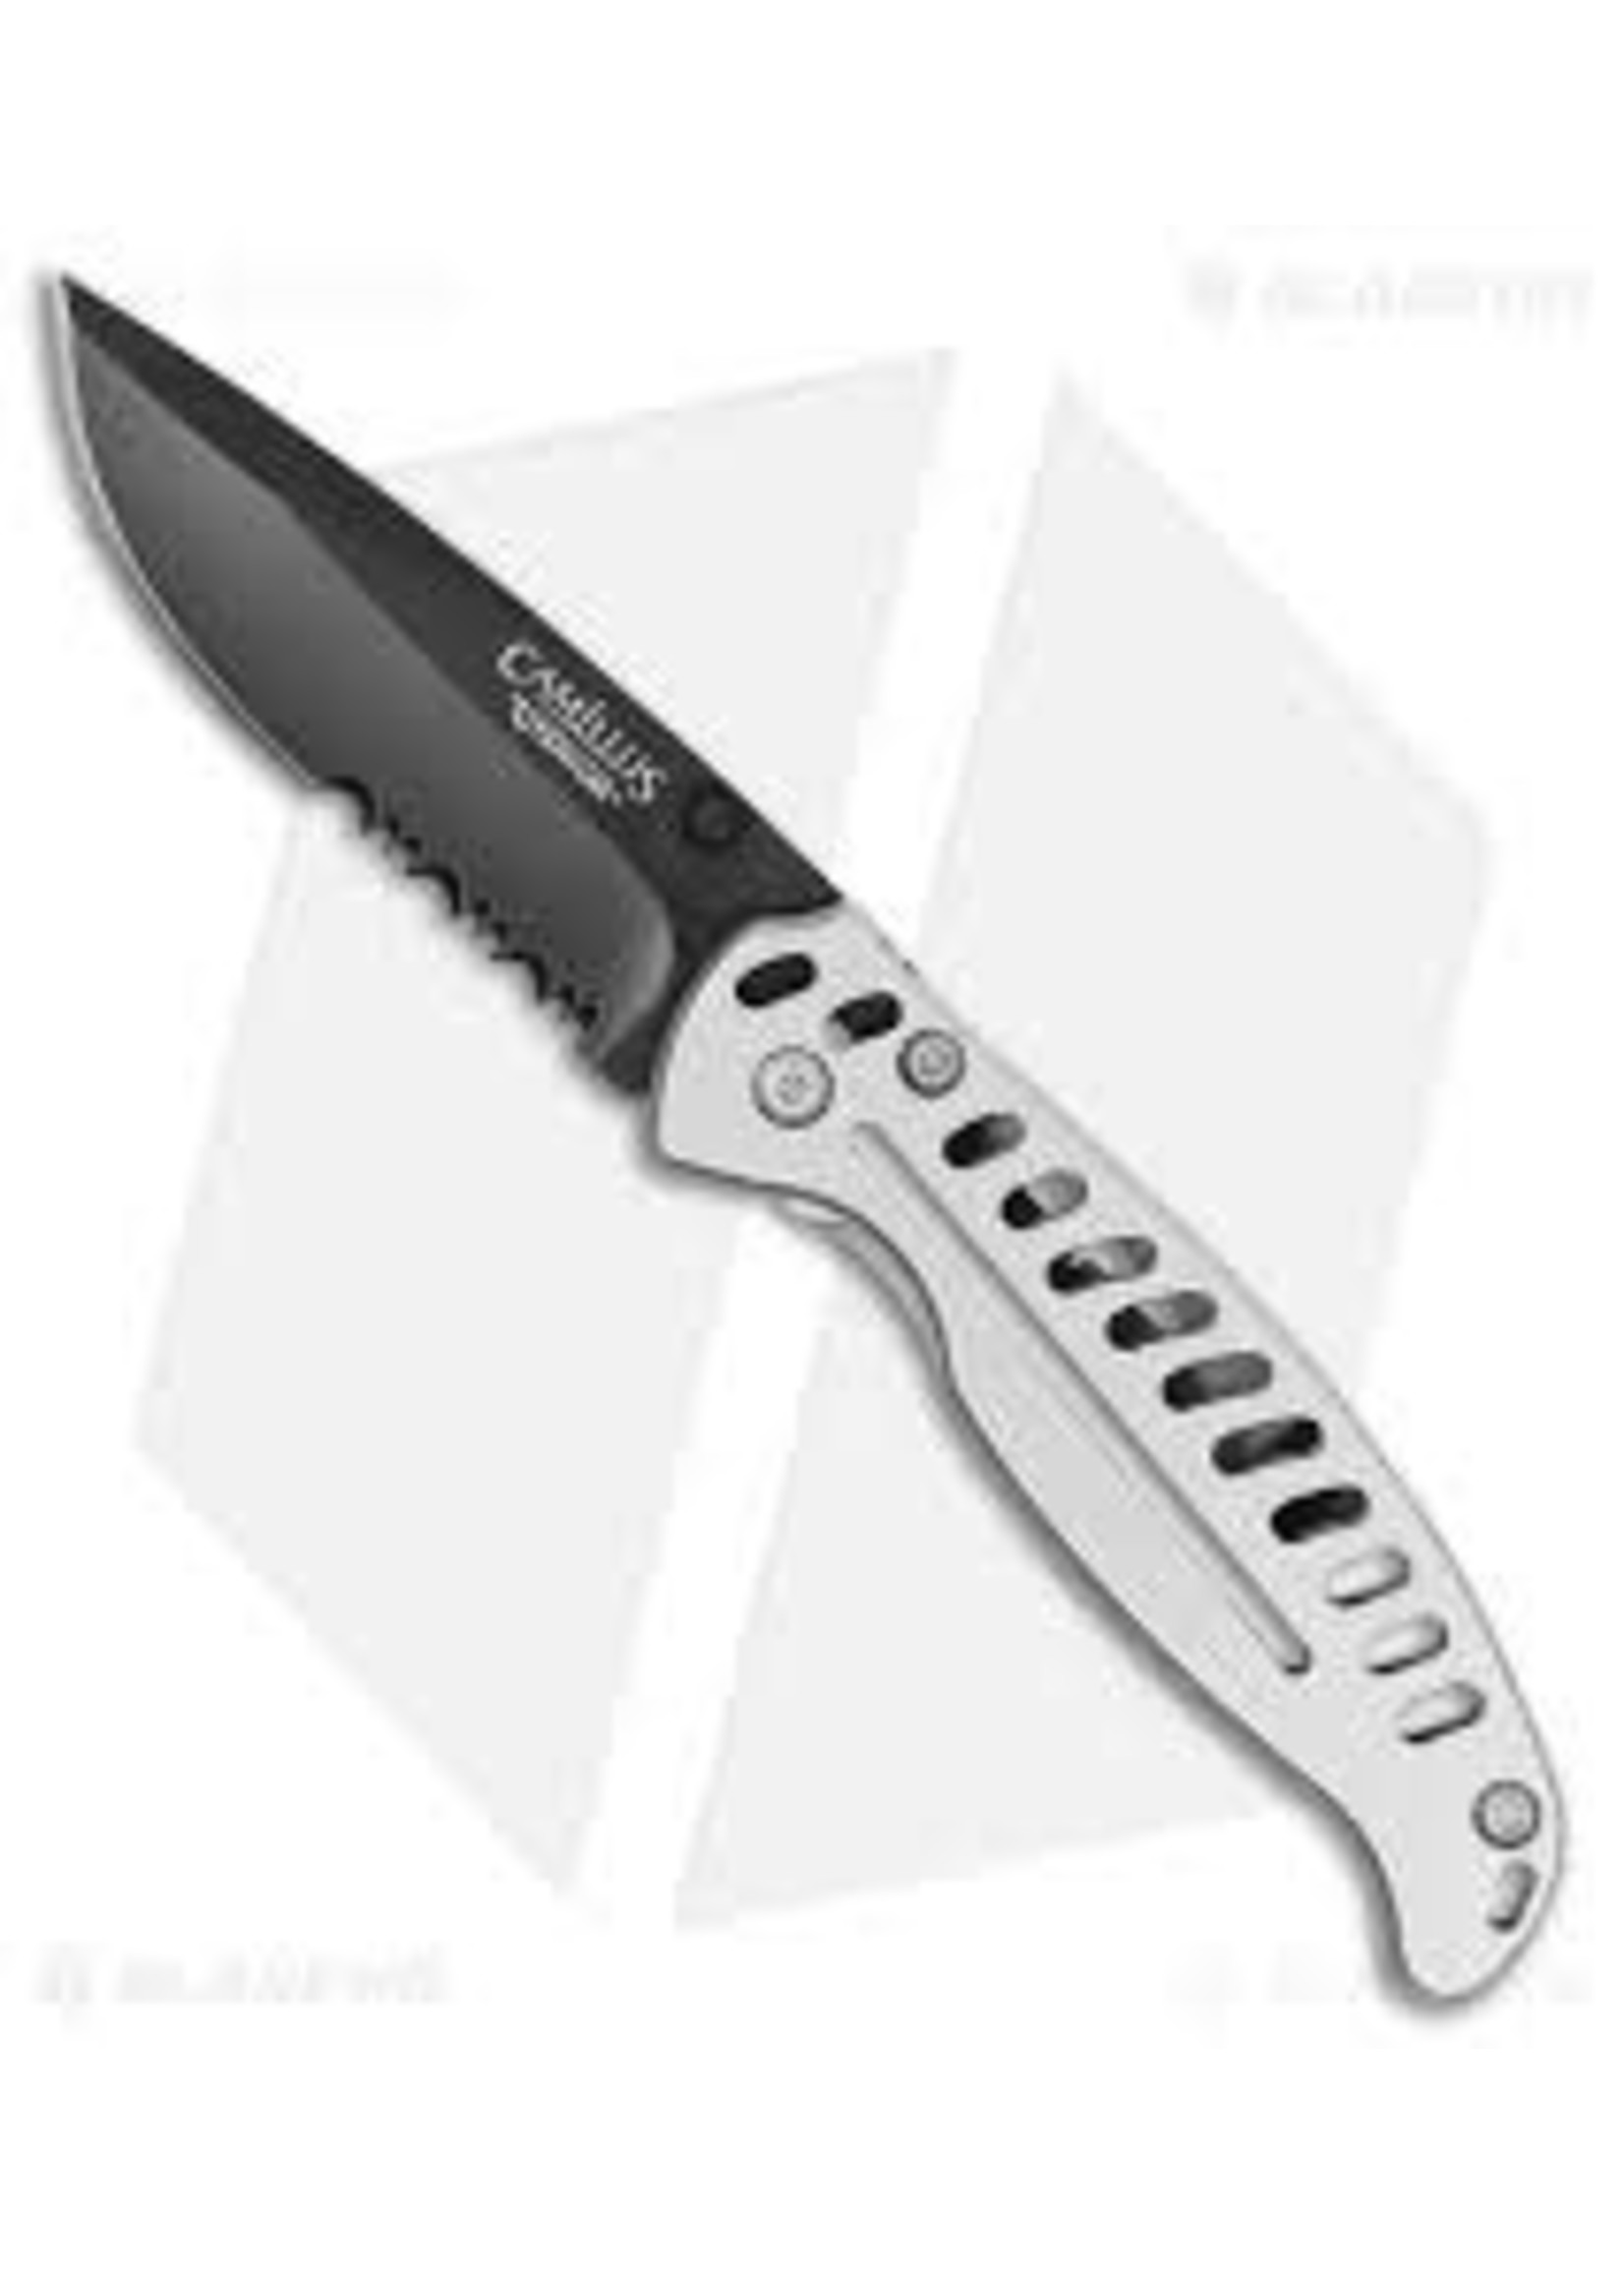 CAMILLUS CAMILLUS KNIFE FOLDING EDC3 BLD 3" OA 6.75" W/CLIP